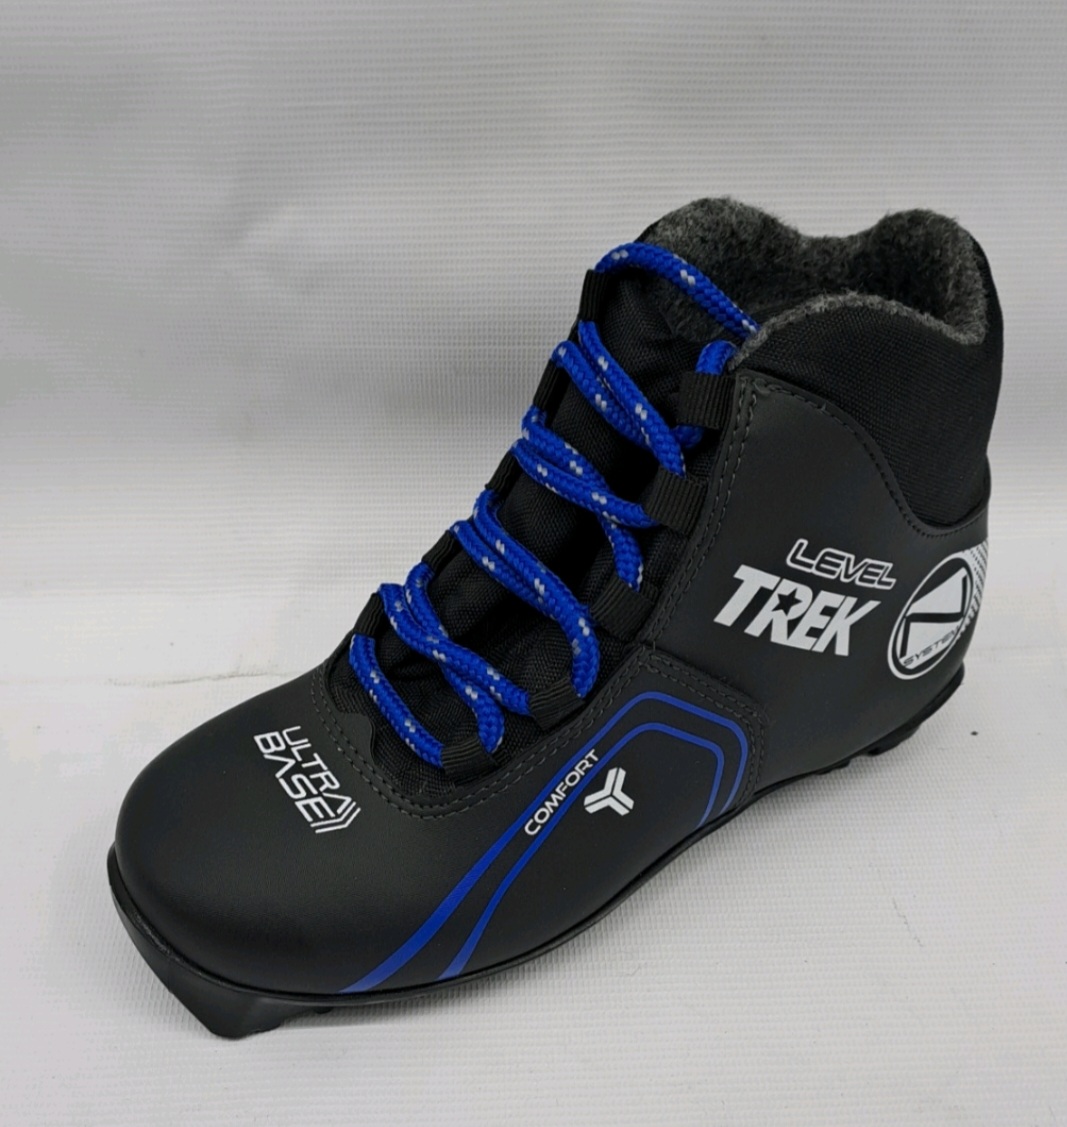 Ботинки лыжные TREK Level 3 черный лого синий RU36 EU37, CM23                                              